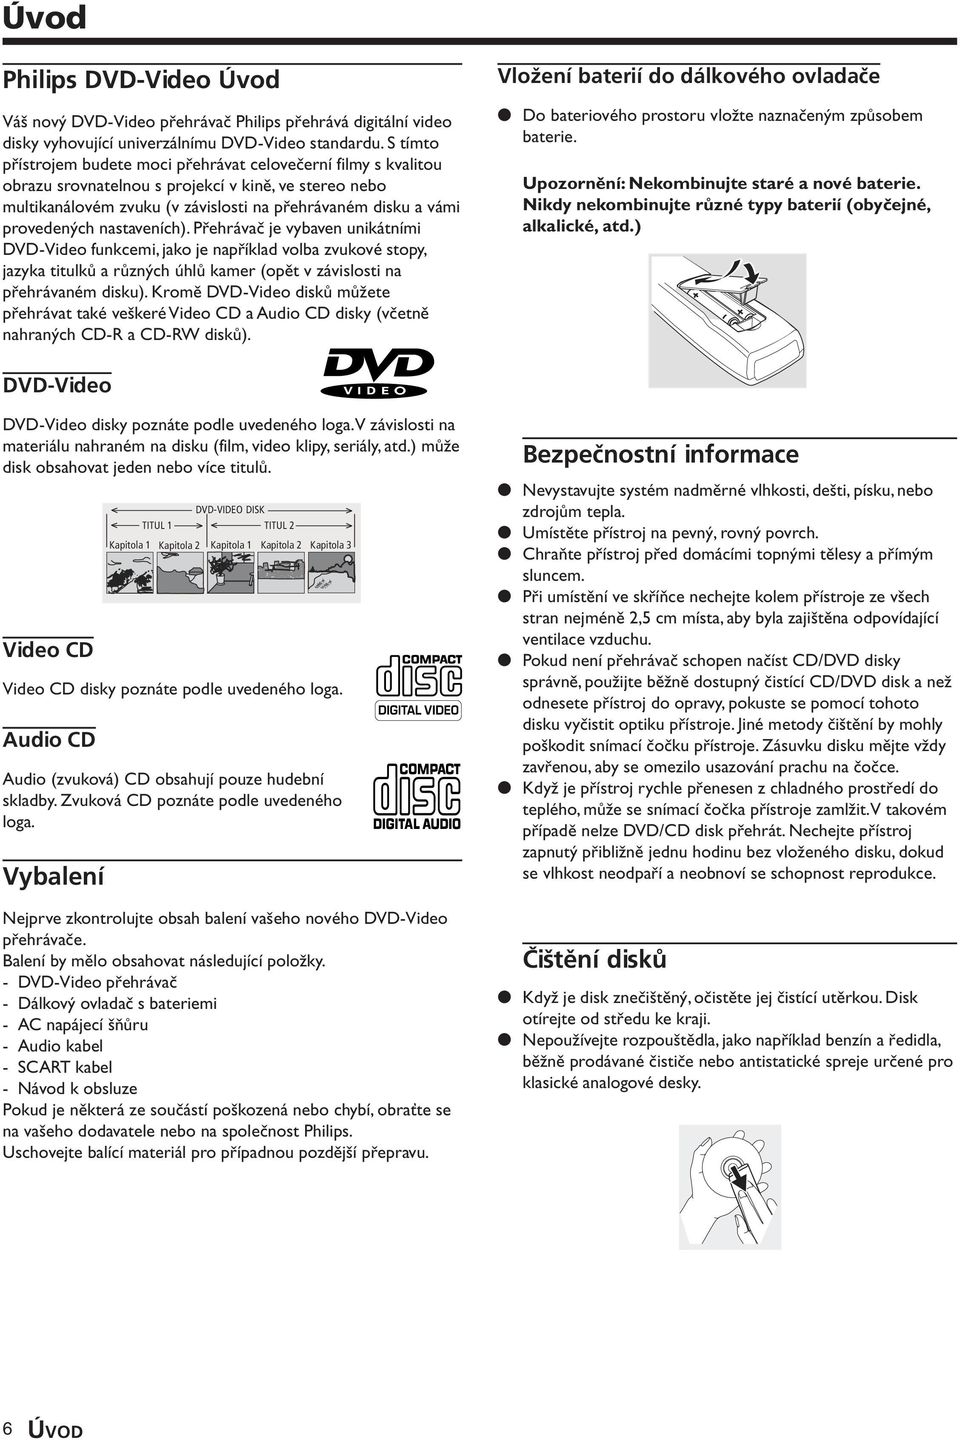 nastaveních). Přehrávač je vybaven unikátními DVD-Video funkcemi, jako je například volba zvukové stopy, jazyka titulků a různých úhlů kamer (opět v závislosti na přehrávaném disku).